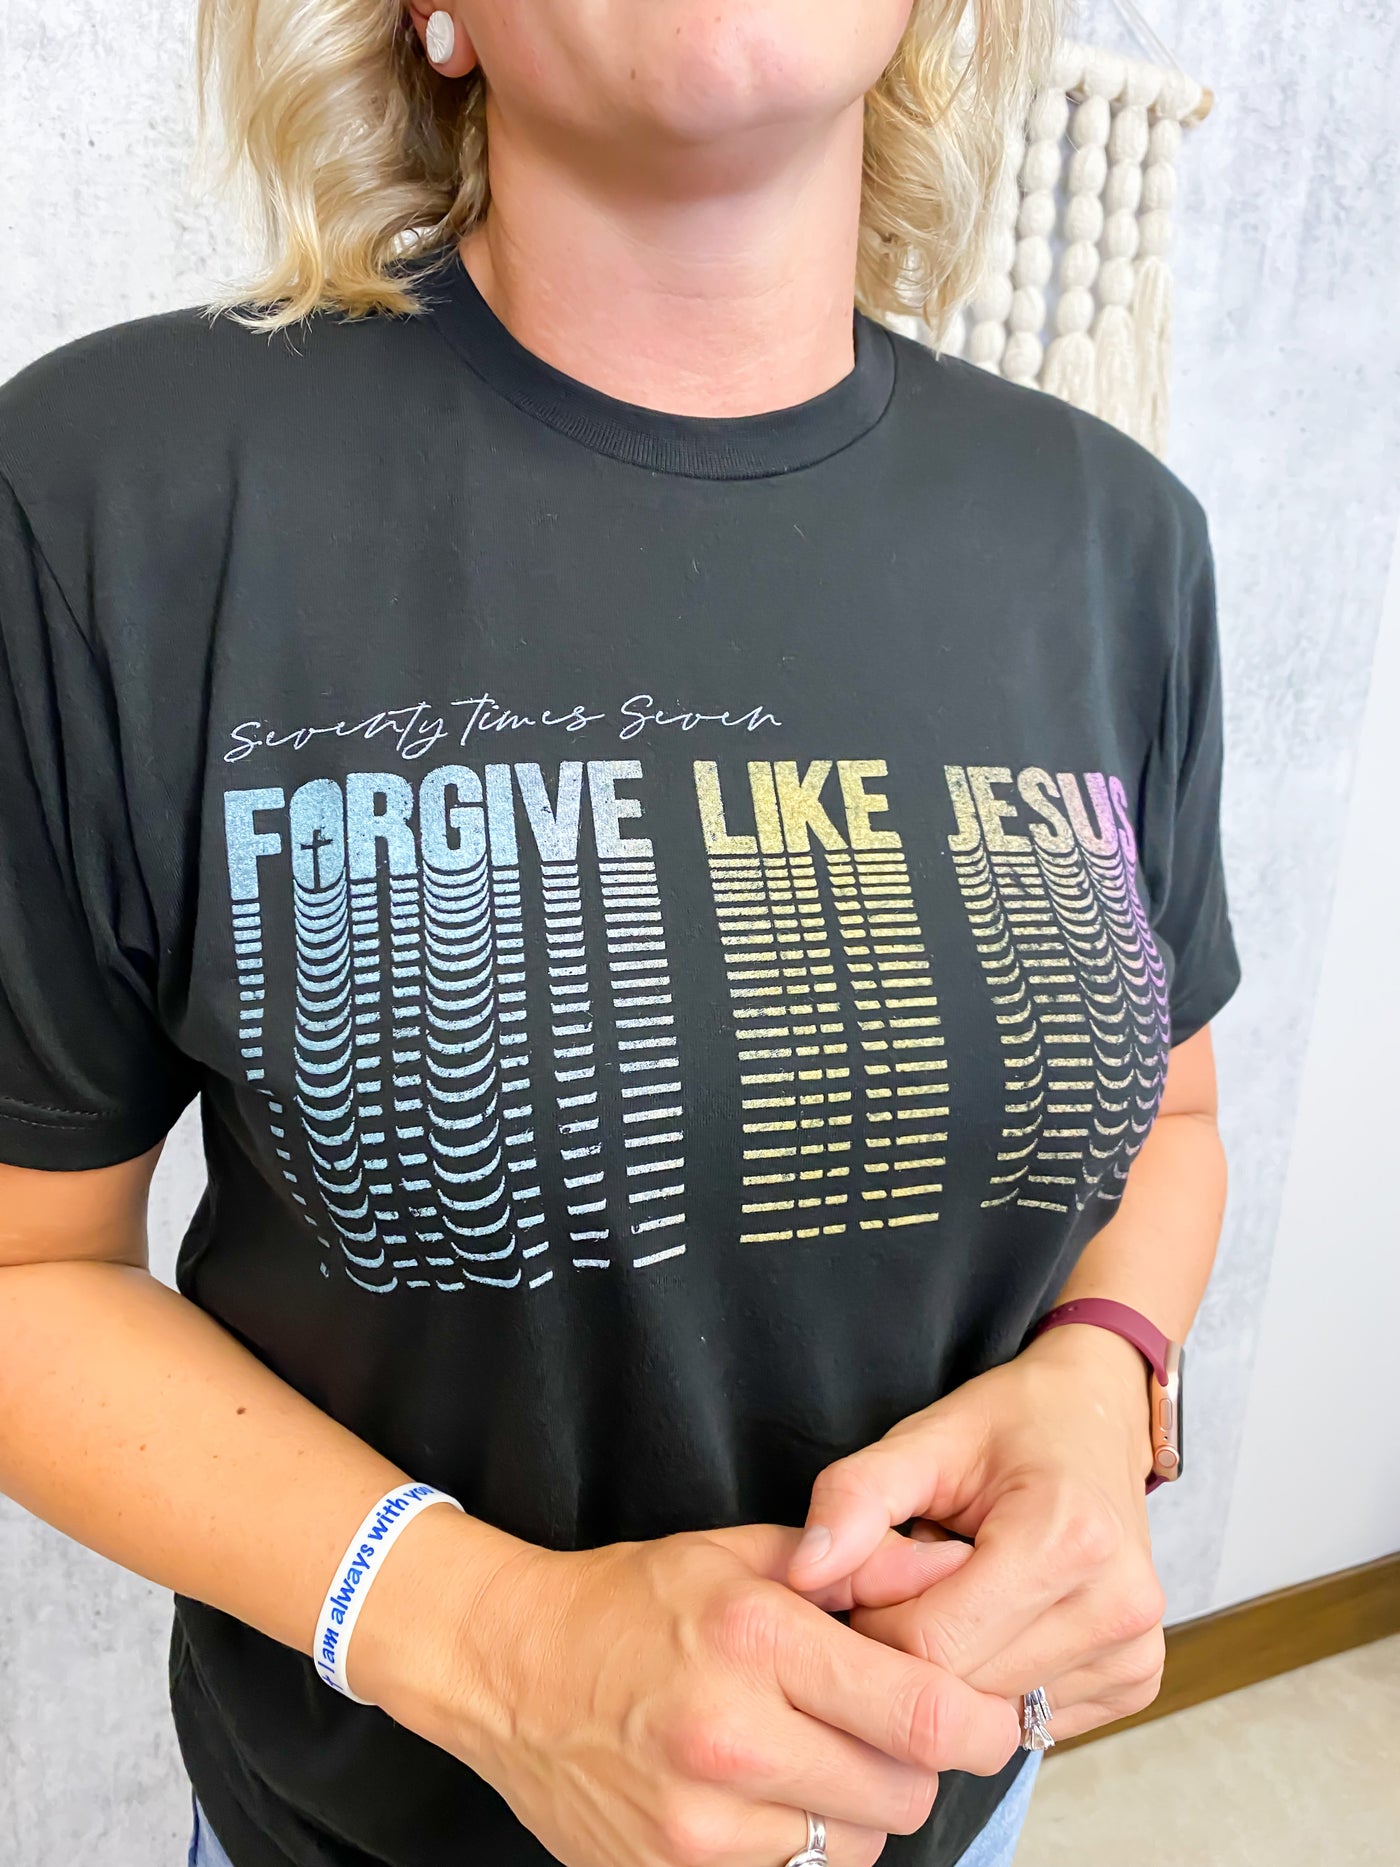 Forgive like Jesus